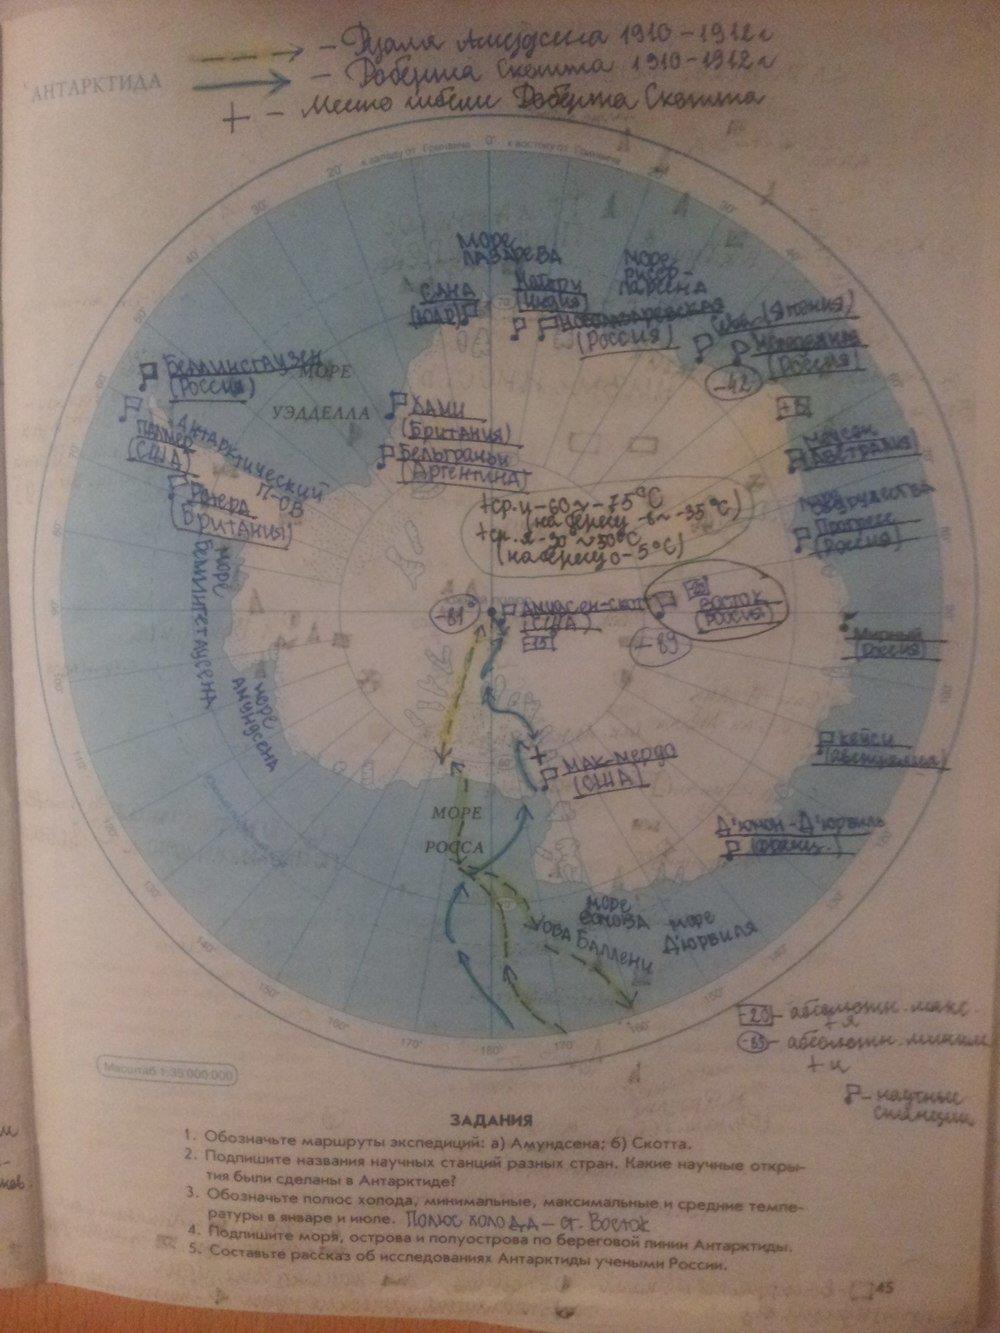 Задания рабочая тетрадь география 7 класс. Гдз рабочая тетрадь по географии 7 класс Сиротин Антарктида. Контурная карта по географии 7 класс Антарктида гдз. Антарктида контурная карта 7 класс гдз. Контурная карта Антарктиды.